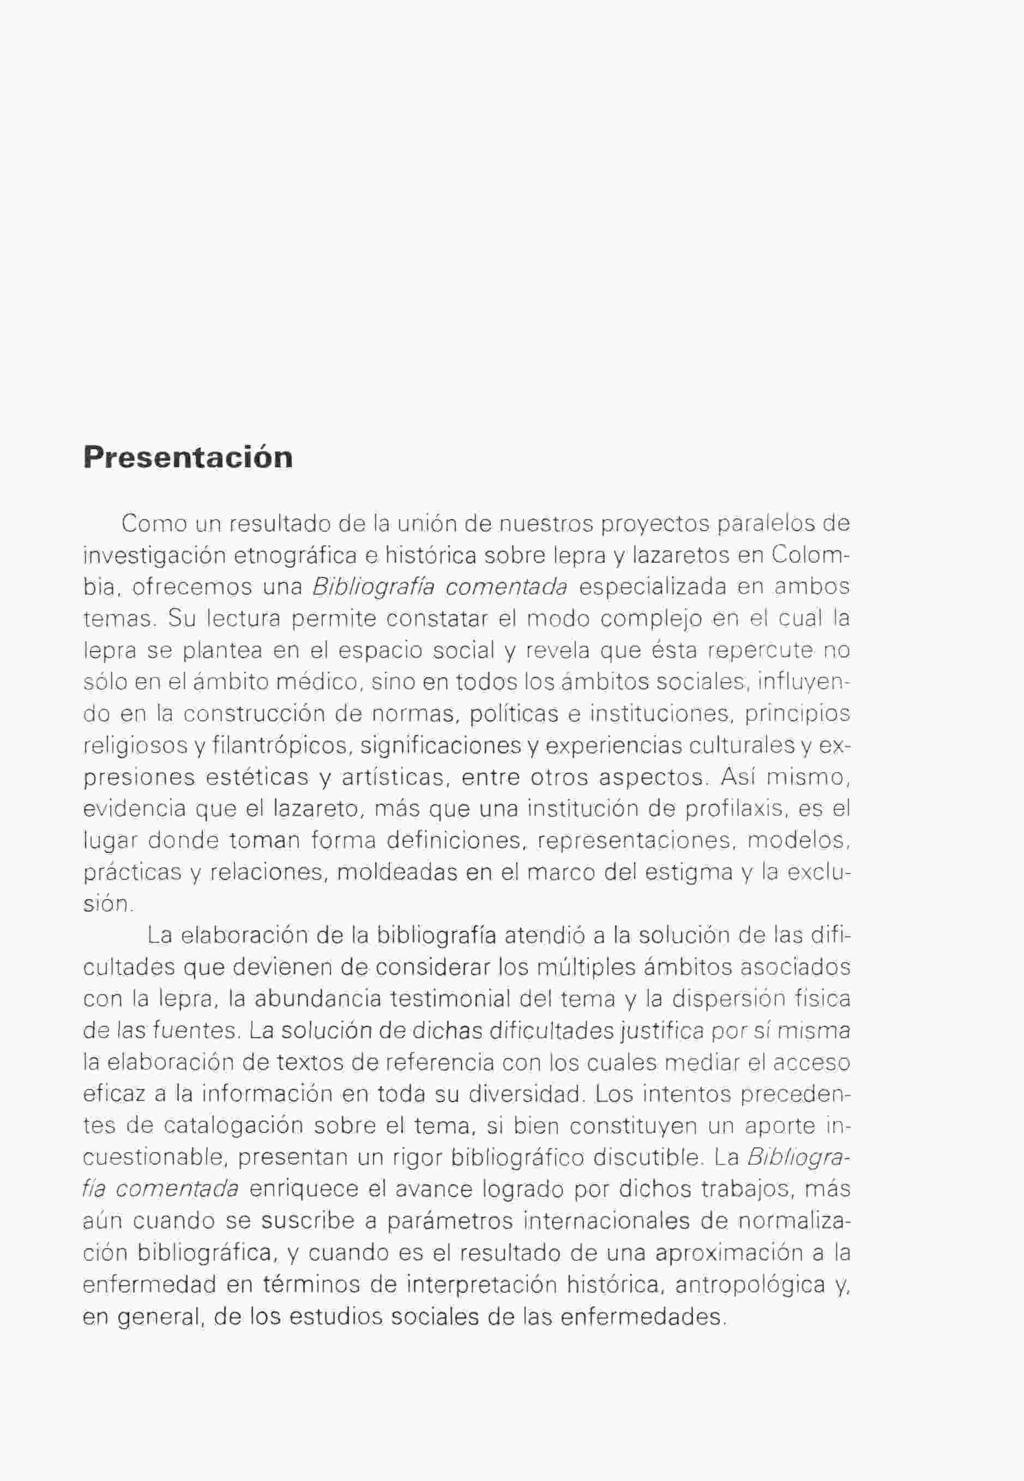 Presentación Como un resultado de la unión de nuestros proyectos paralelos de investigación etnográfica e histórica sobre lepra y lazaretos en Colombia, ofrecemos una Bibliografía comentada